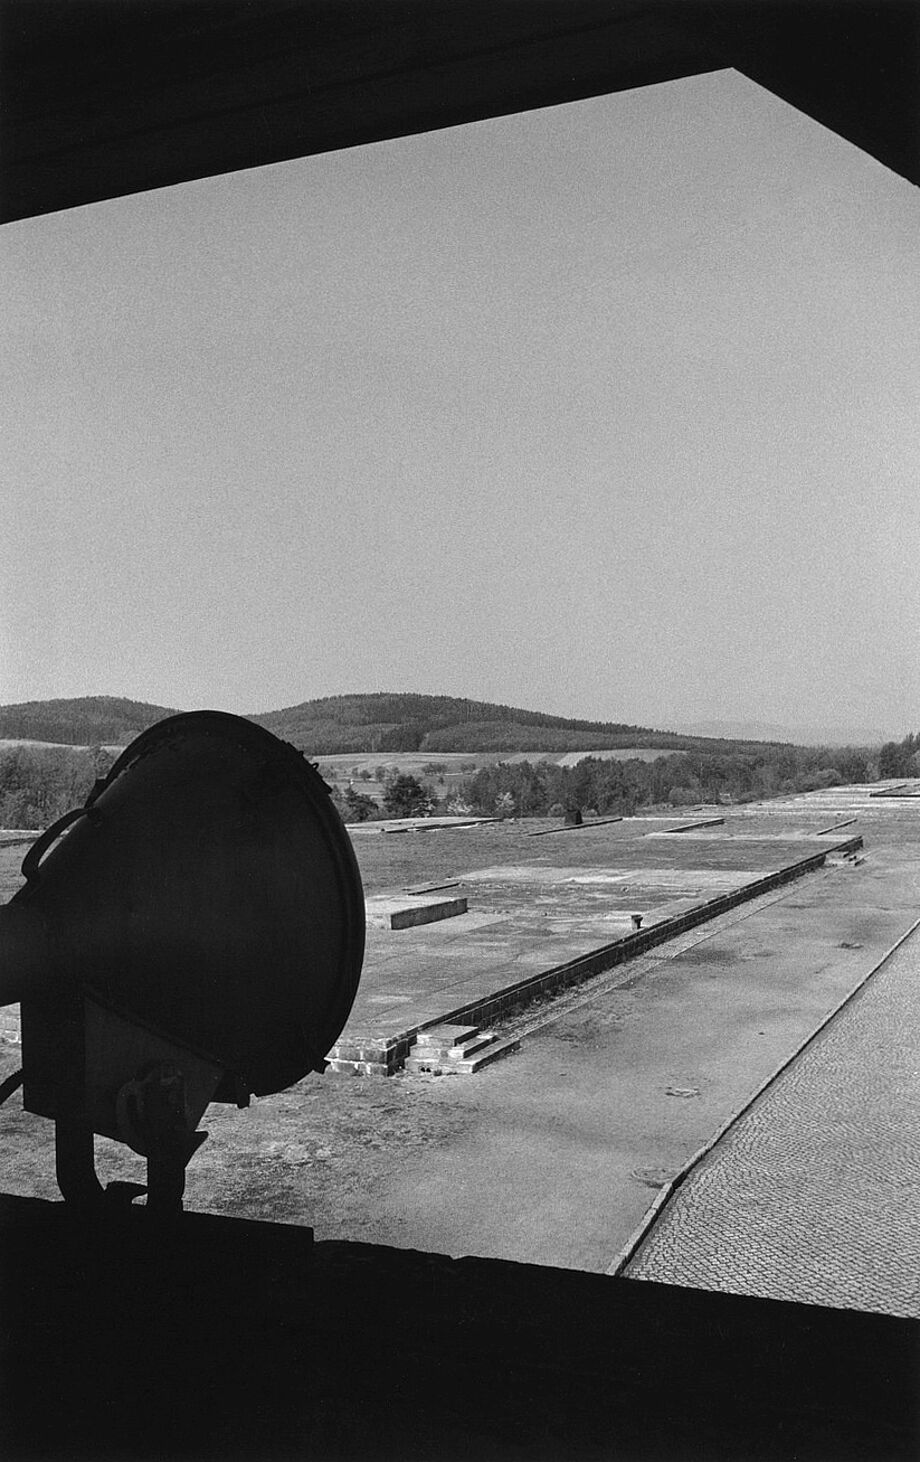 Dirk Reinartz: Blick vom Torgebäude über das Lagergelände, Groß-Rosen, 1993, aus der Serie totenstill © Deutsche Fotothek + Stiftung F.C. Gundlach / Dirk Reinartz